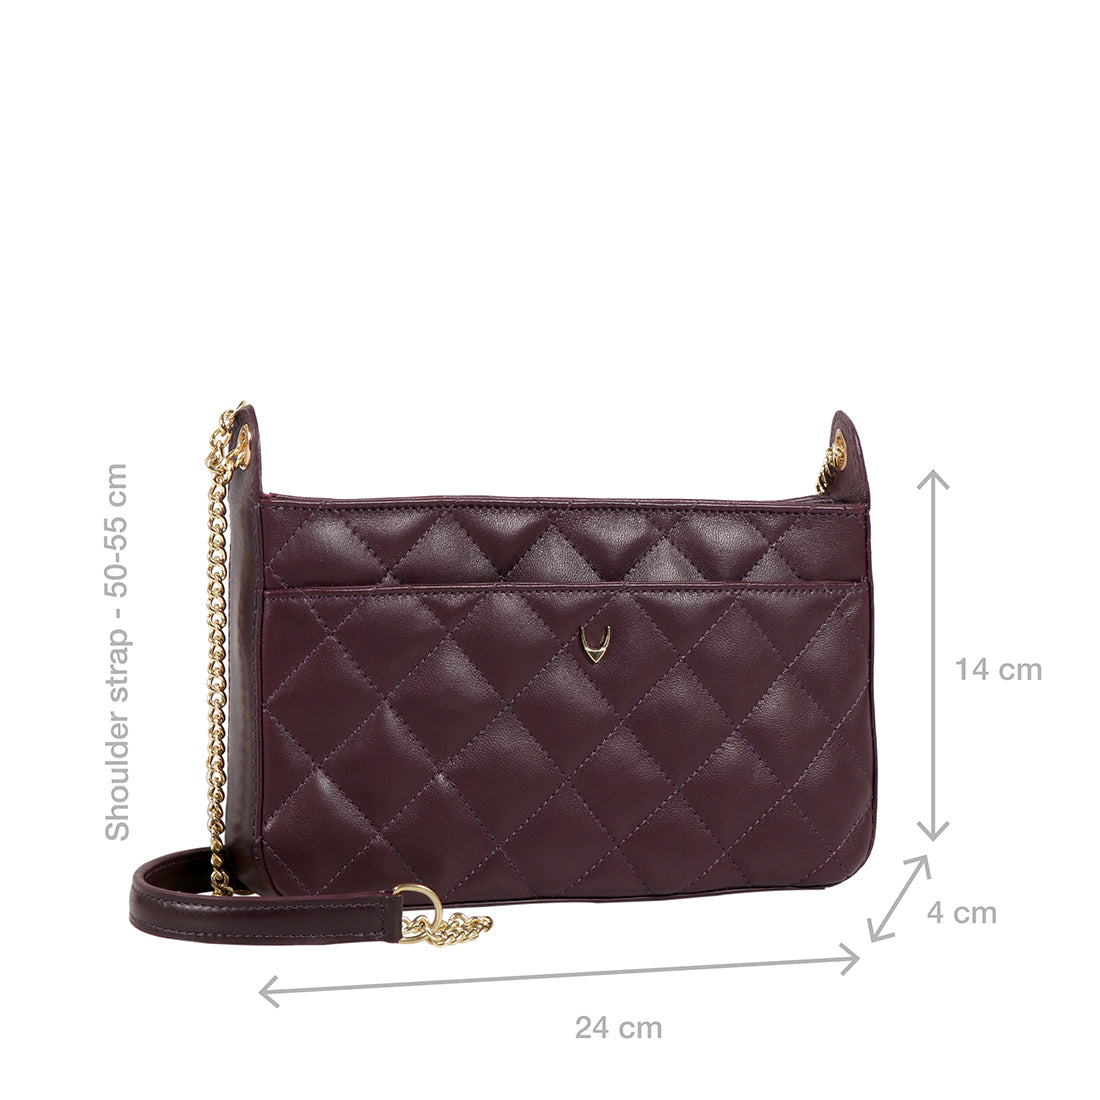 Buy Red Ee Lyra Sling Bag Online - Hidesign